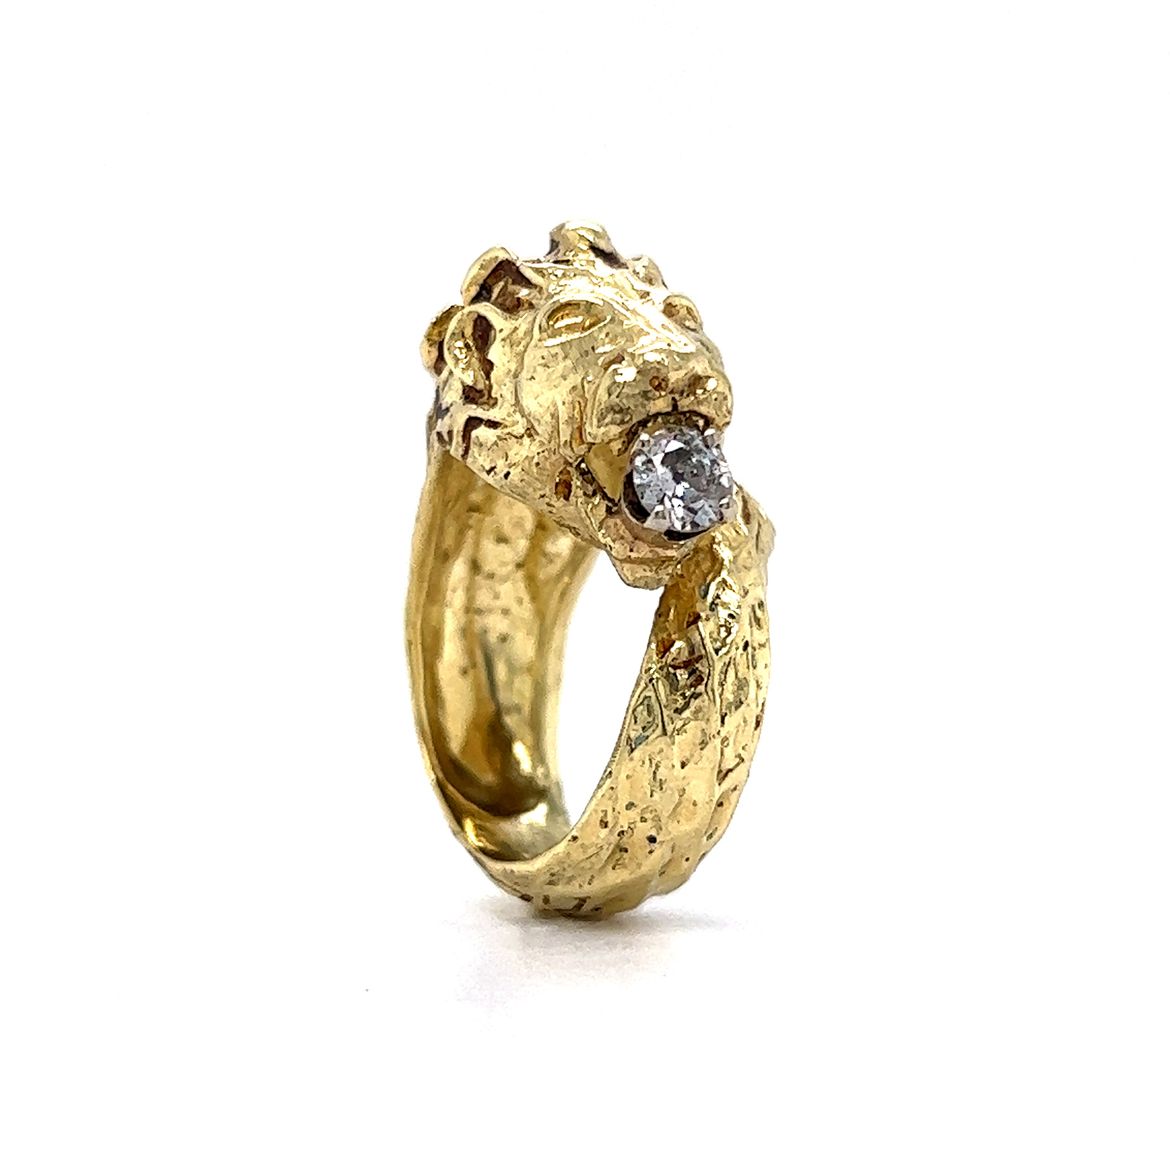 Buy Gold Lion Ring for Men Gold Animal Ring Gold Men Ring Lion Head Animal  Jewelry Handmade 22K Gold Ring for Him Men's Diamond Ring Online in India -  Etsy